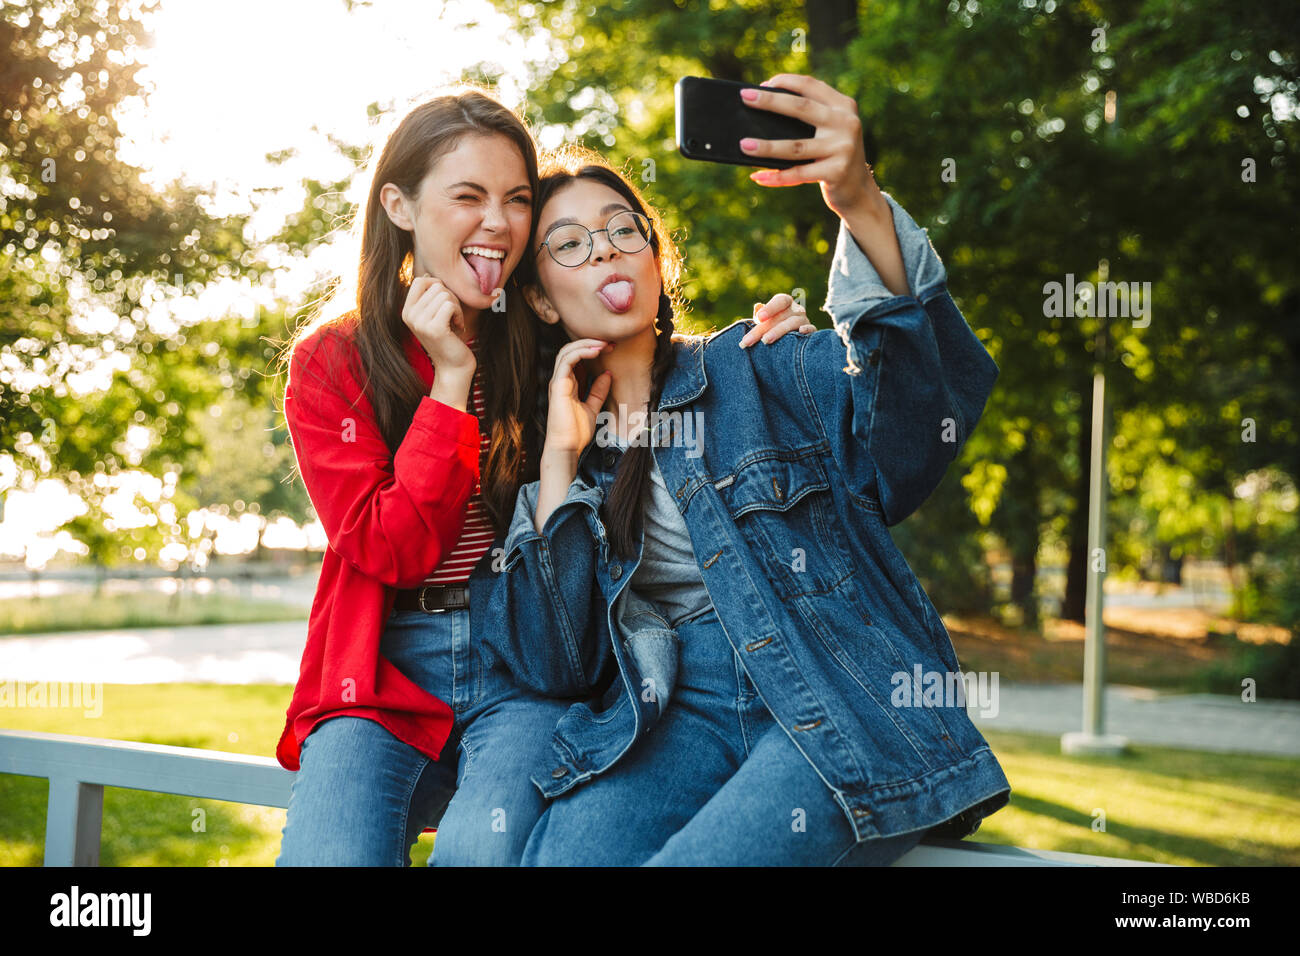 Image de deux étudiants en funny girls photo selfies sur téléphone cellulaire en langues qui sort tout en restant assis sur main courante en green park Banque D'Images